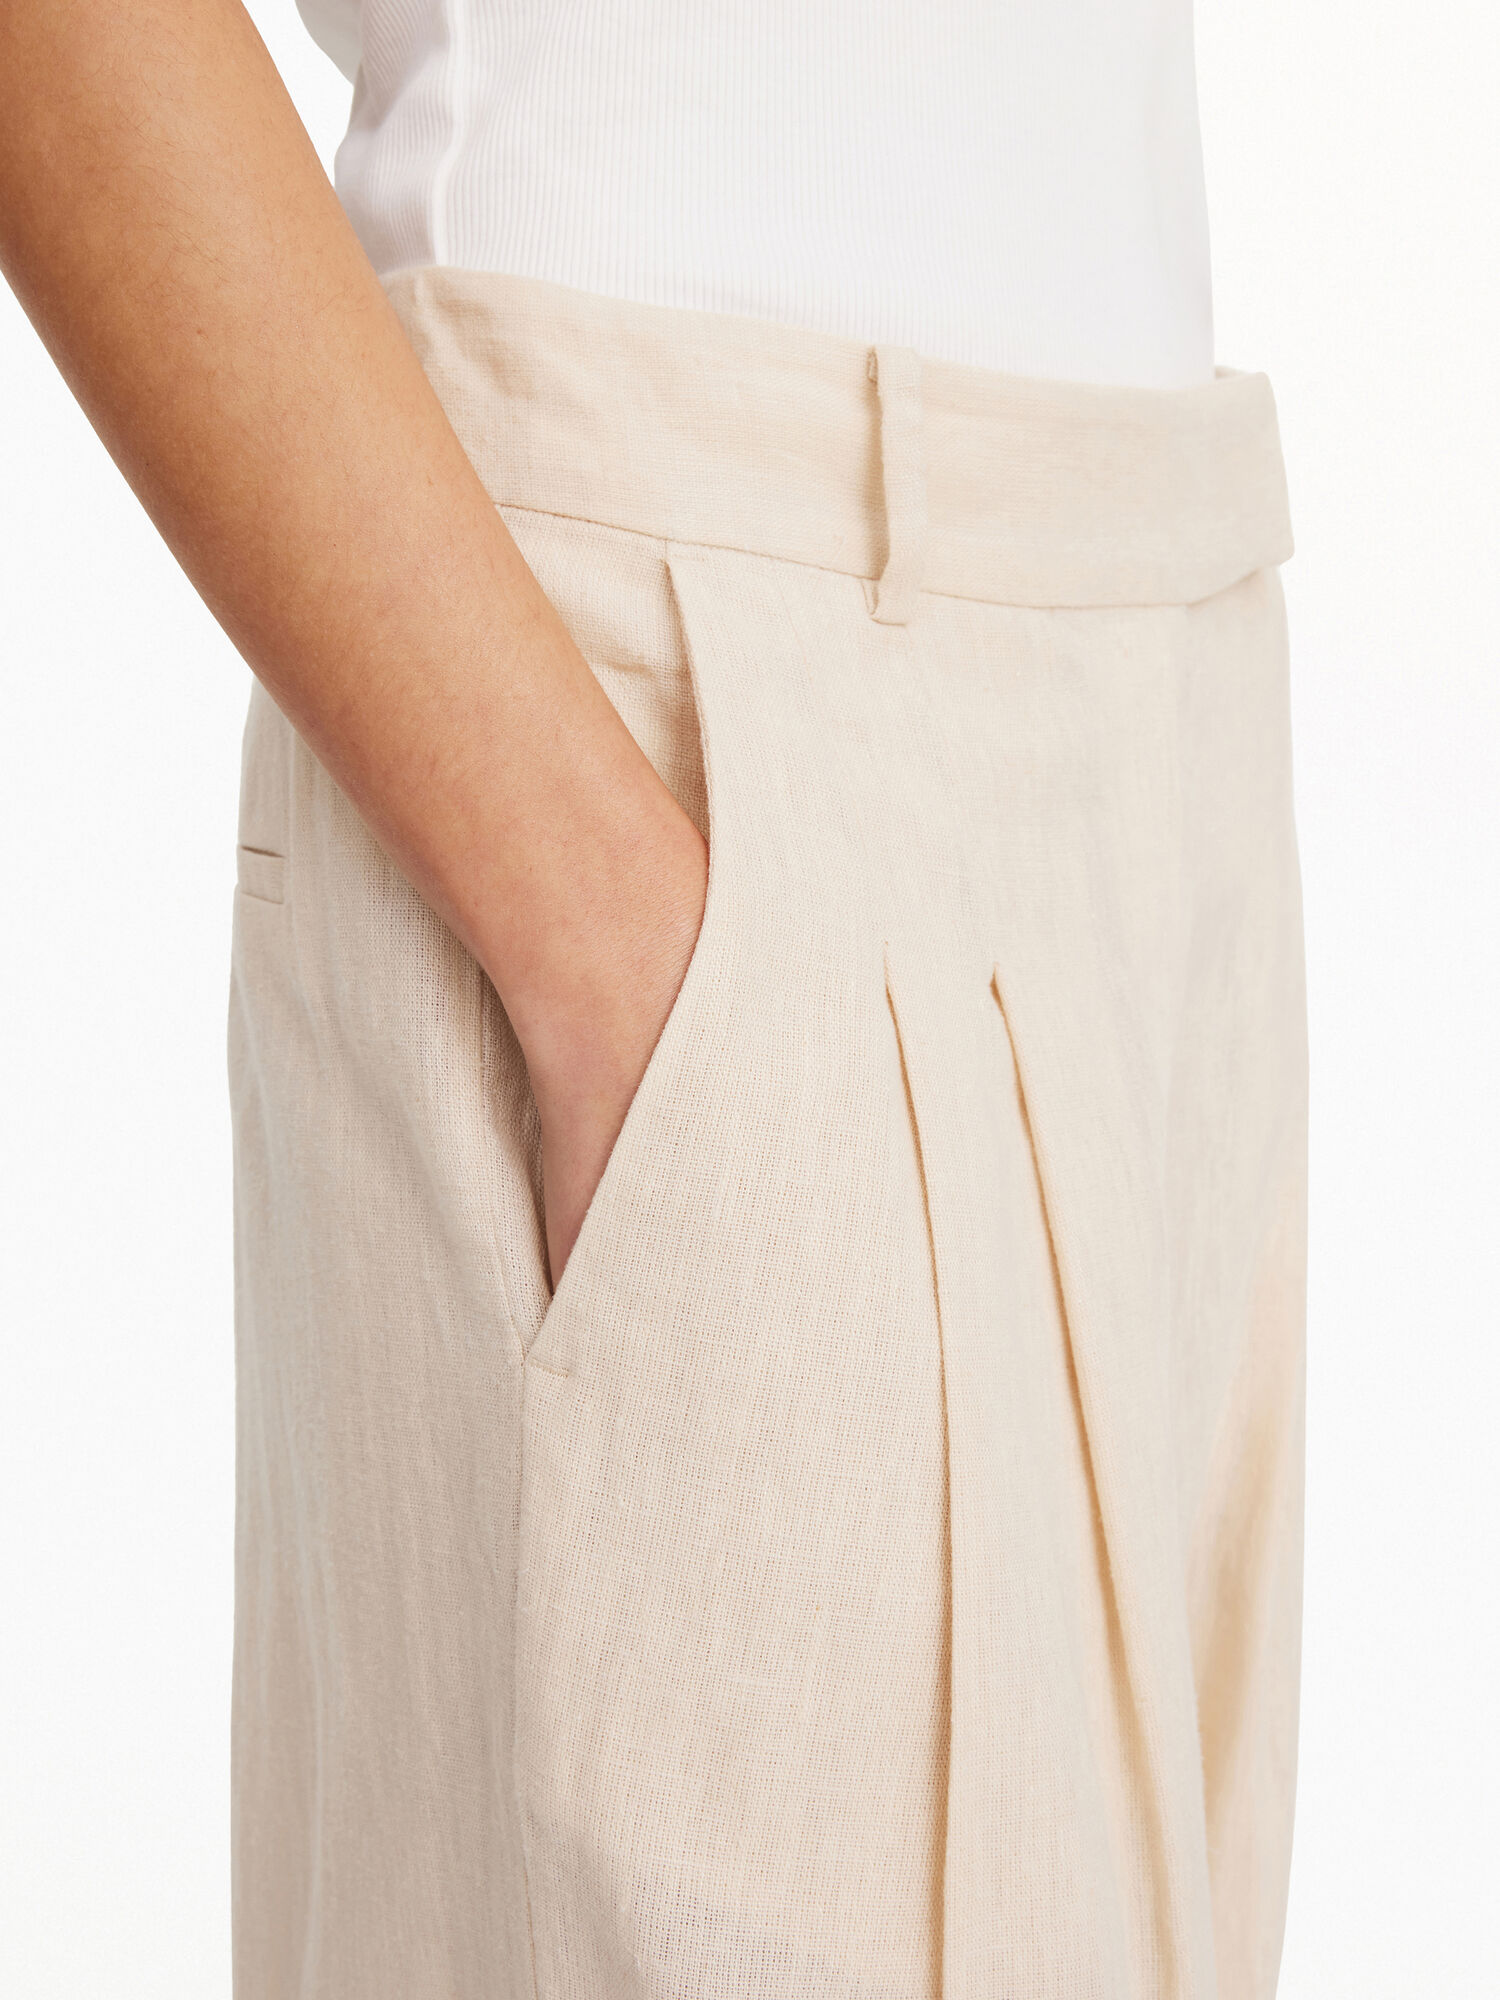 Burda 6332 - high waist pants with permanent pleats – La CaSa de